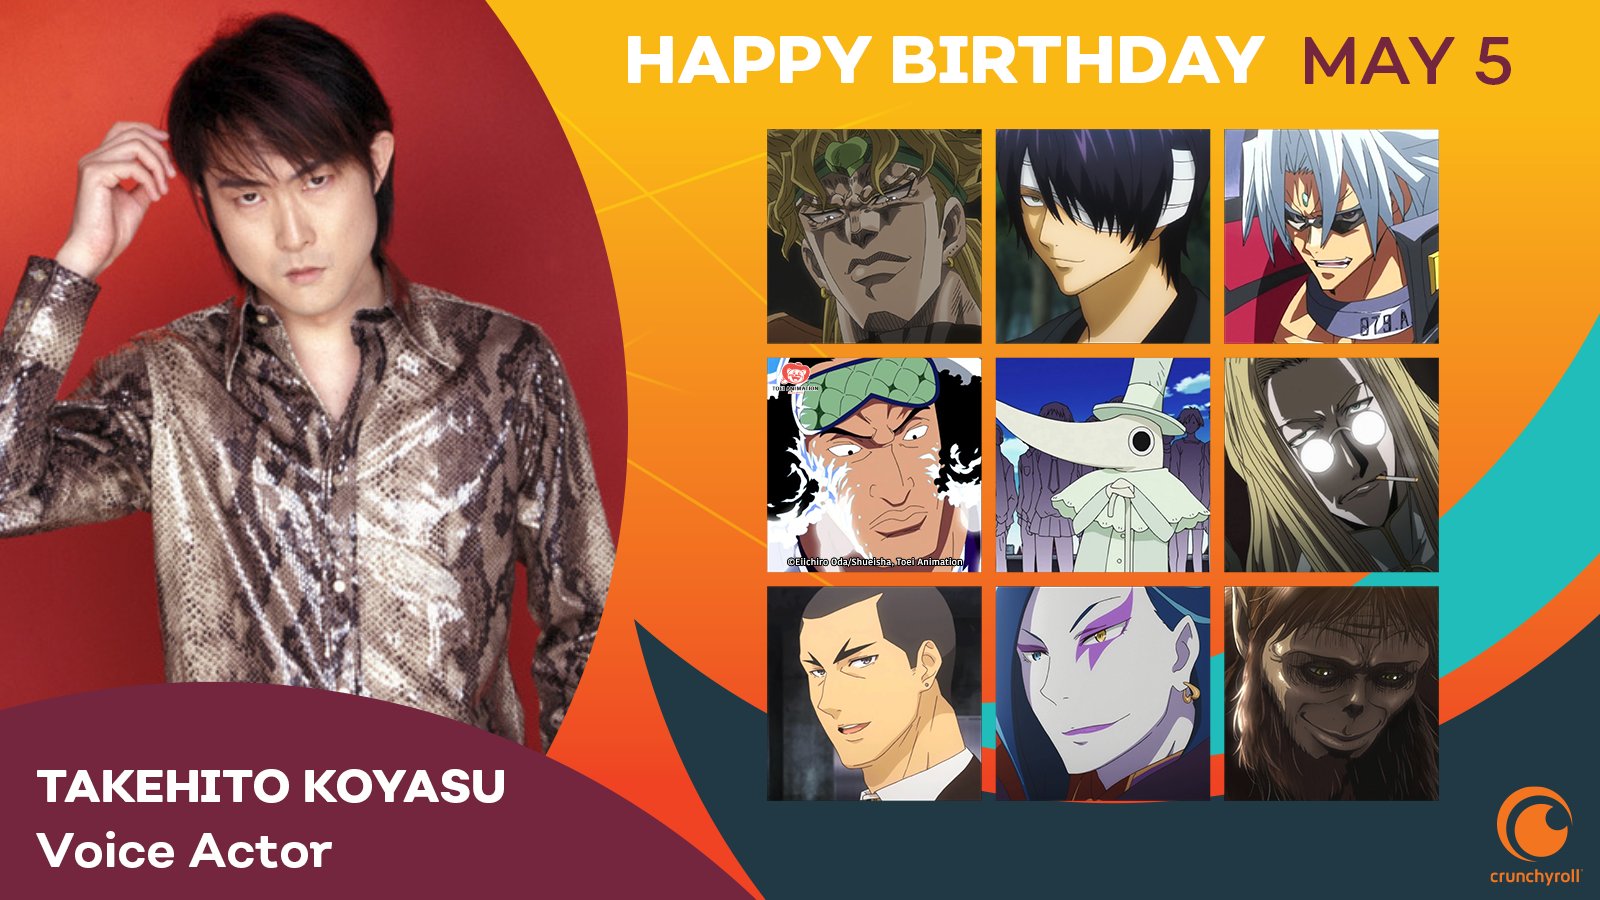 202. Happy Birthday to the Japanese Voice Actor Takehito Koyasu. 